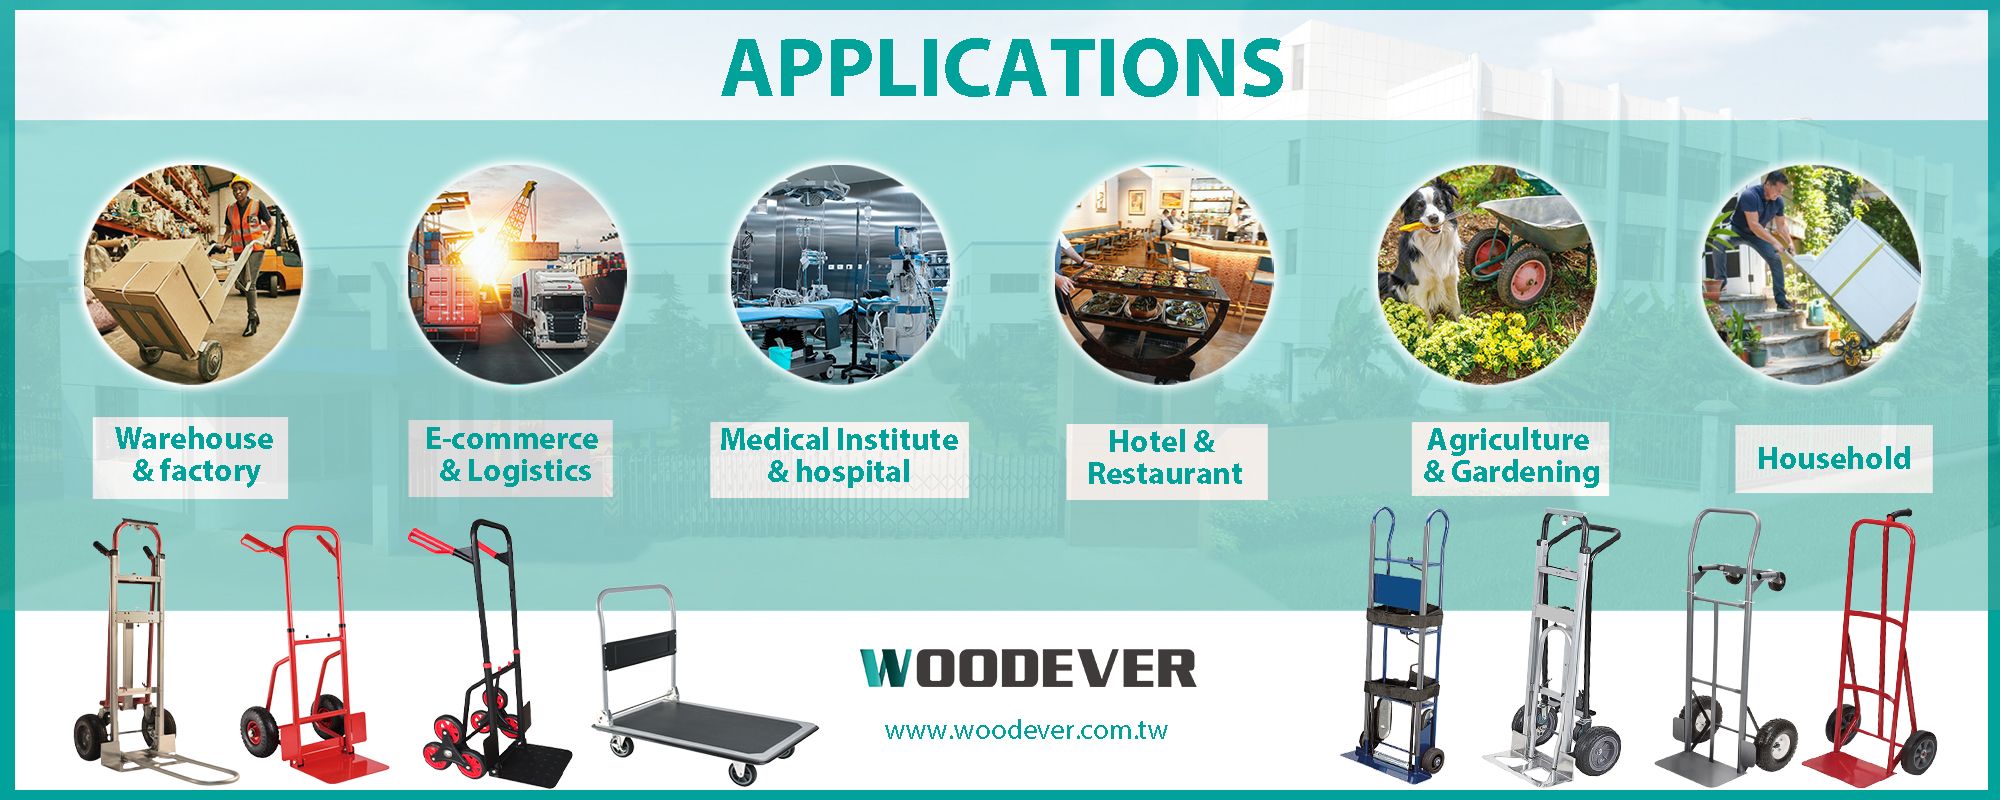 Steekwagen toepassingen in diverse sectoren zoals logistiek, medisch, hotel en restaurant